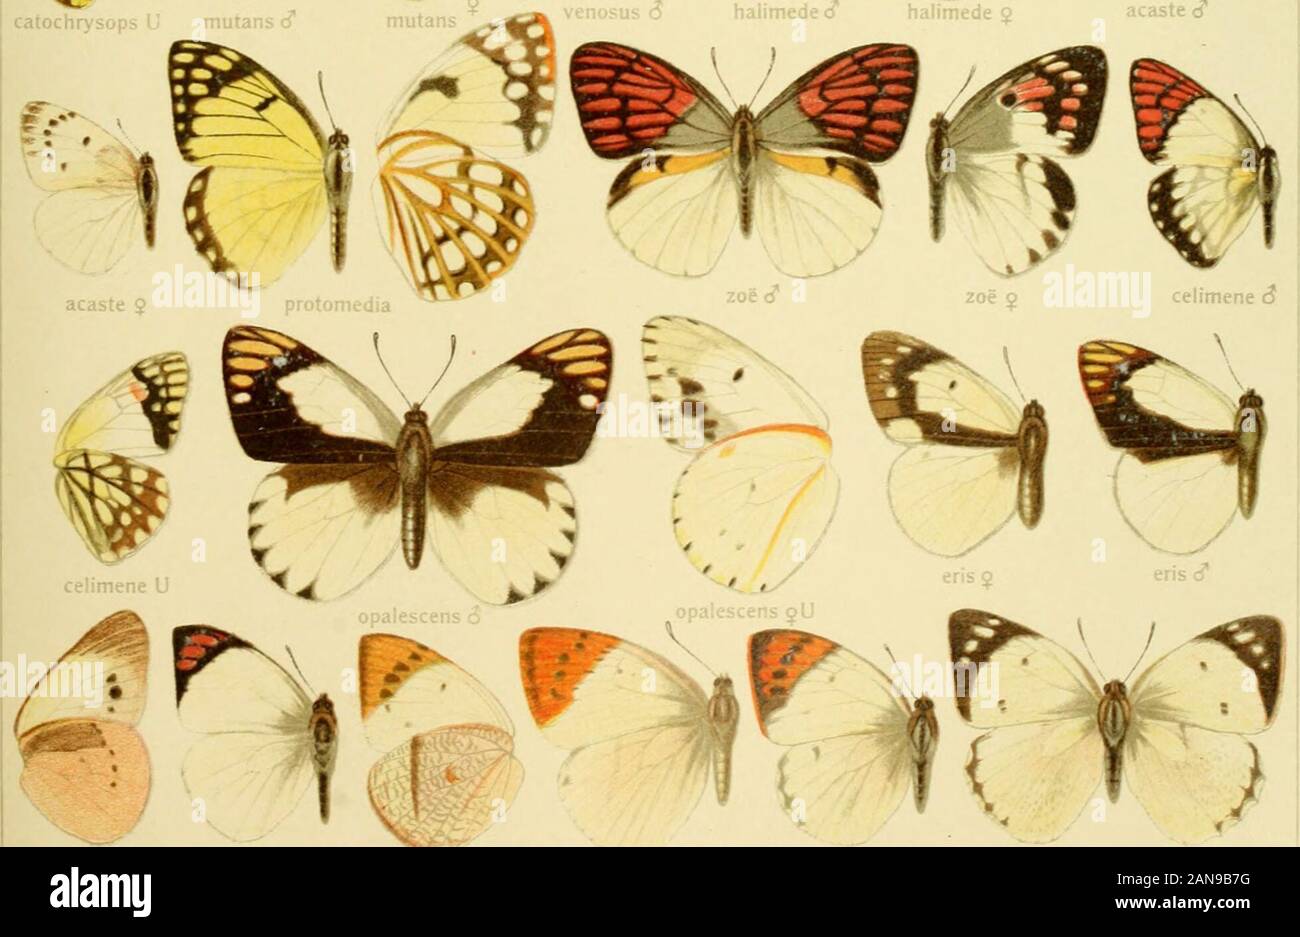 Die Gross-Schmetterlinge der Erde : eine systematische Bearbeitung der bis jetzt bekannten Gross-Schmetterlinge . acaste cT. jobiiia g U DuAlori! j looina &lt;^ »LM!)&lt;1 V I. dlUiUci Pars II. Fauna airicaiia xm TERACOLUS 17 Stock Photo